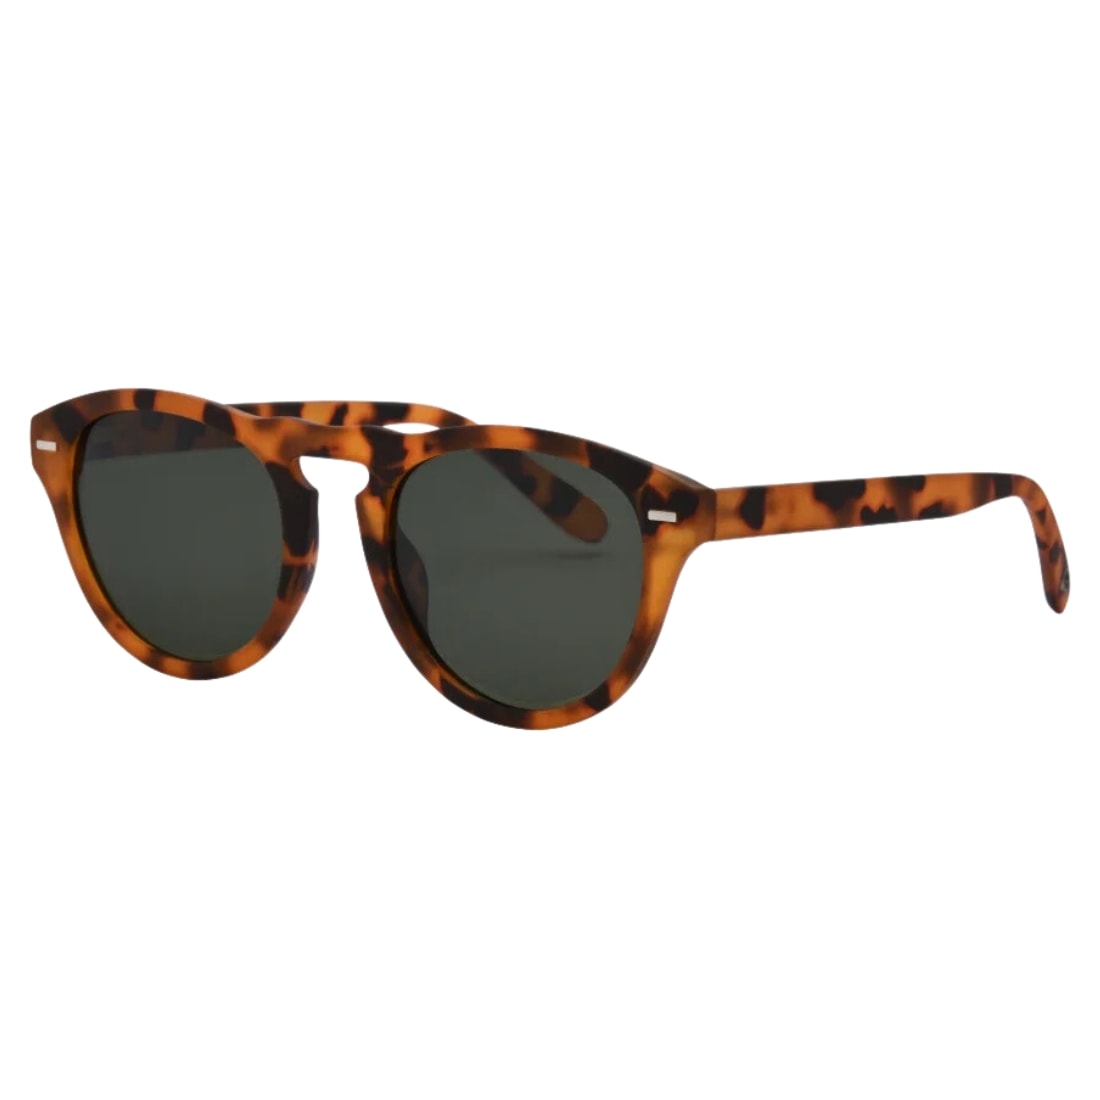 I-Sea Swell Round Polarised Sunglasses - Honey Tortoise/Smoke Polarized Lens